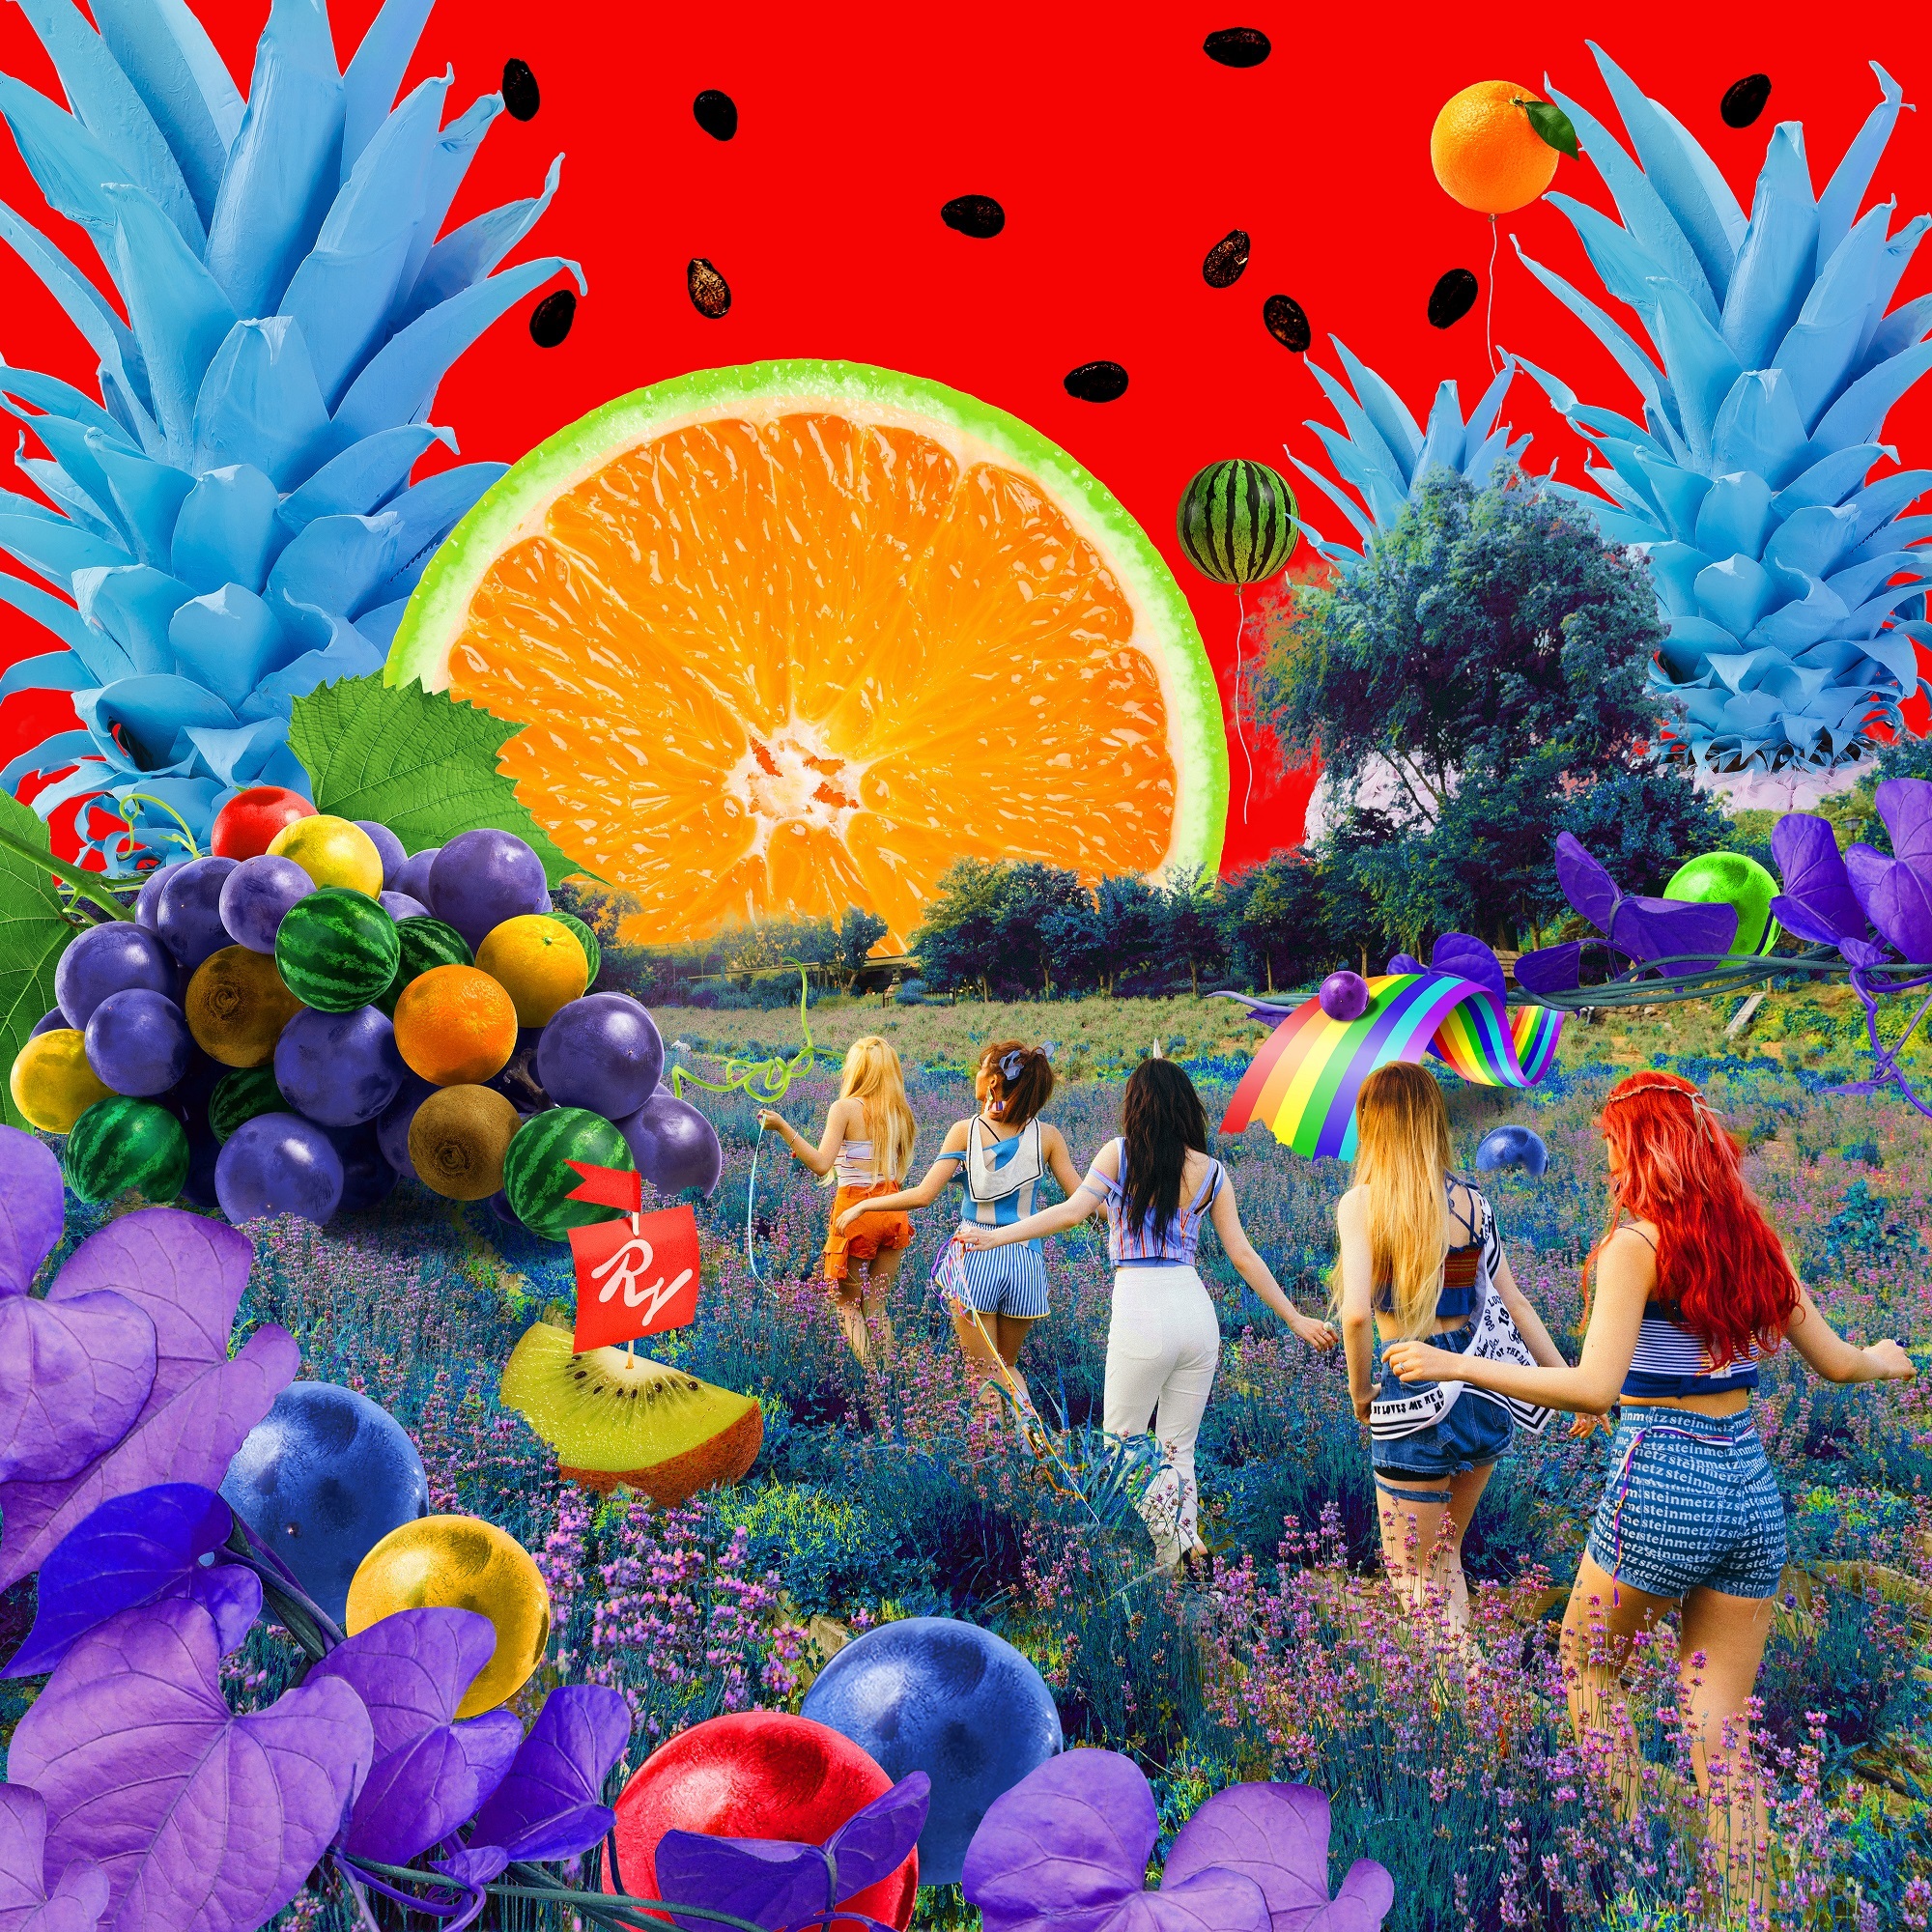 20170731.1145.6 Red Velvet - The Red Summer - Summer Mini Album cover.jpg